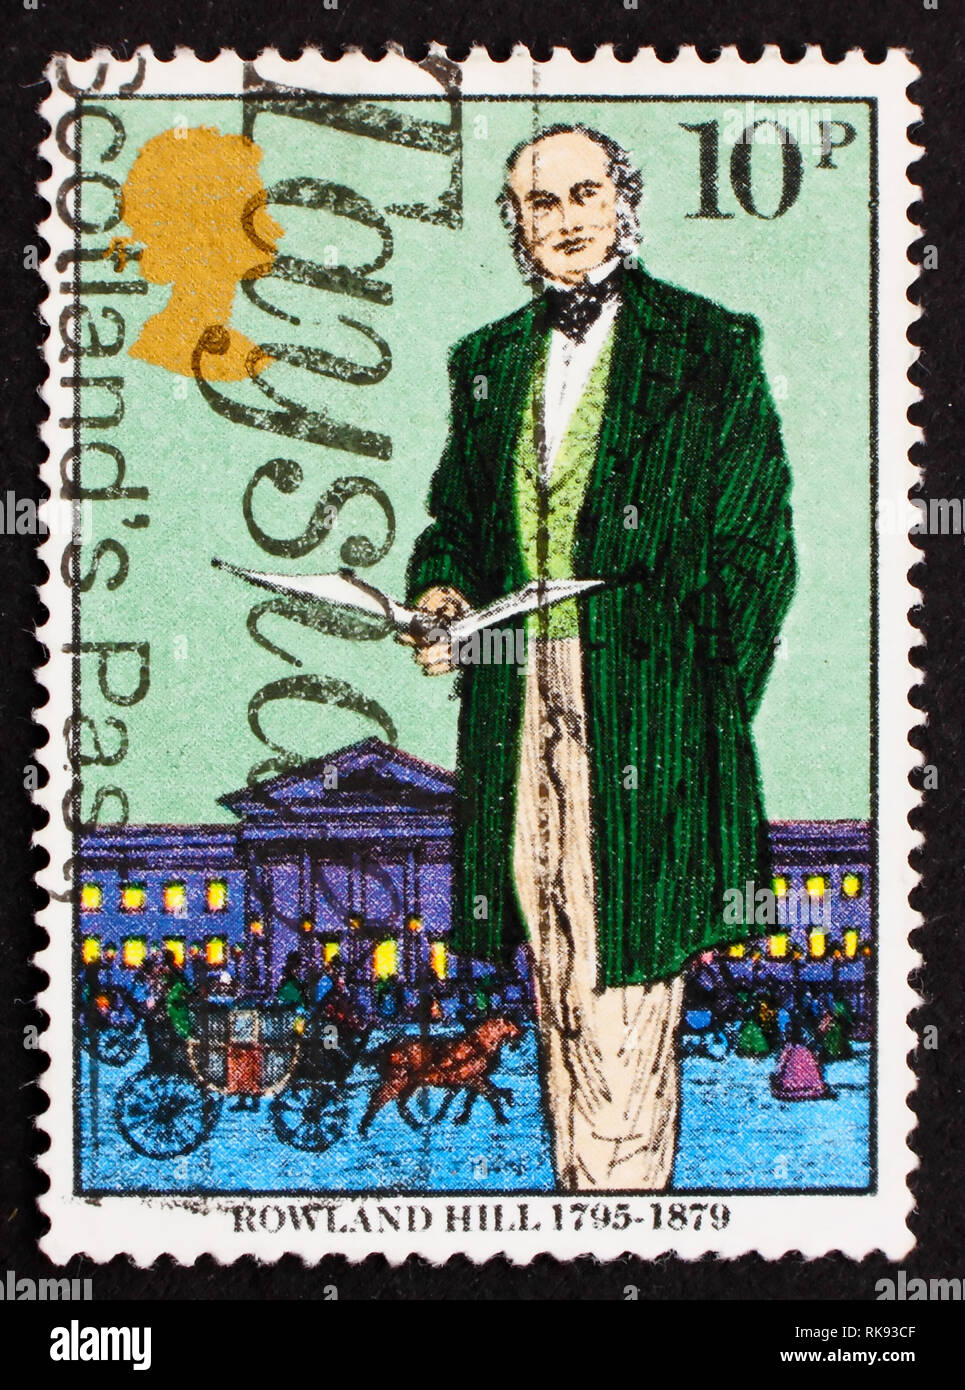 Großbritannien - ca. 1979: einen Stempel in den Großbritannien gedruckten zeigt Sir Rowland Hill, Urheber von Penny Porto, Reformer des Postwesens, c Stockfoto